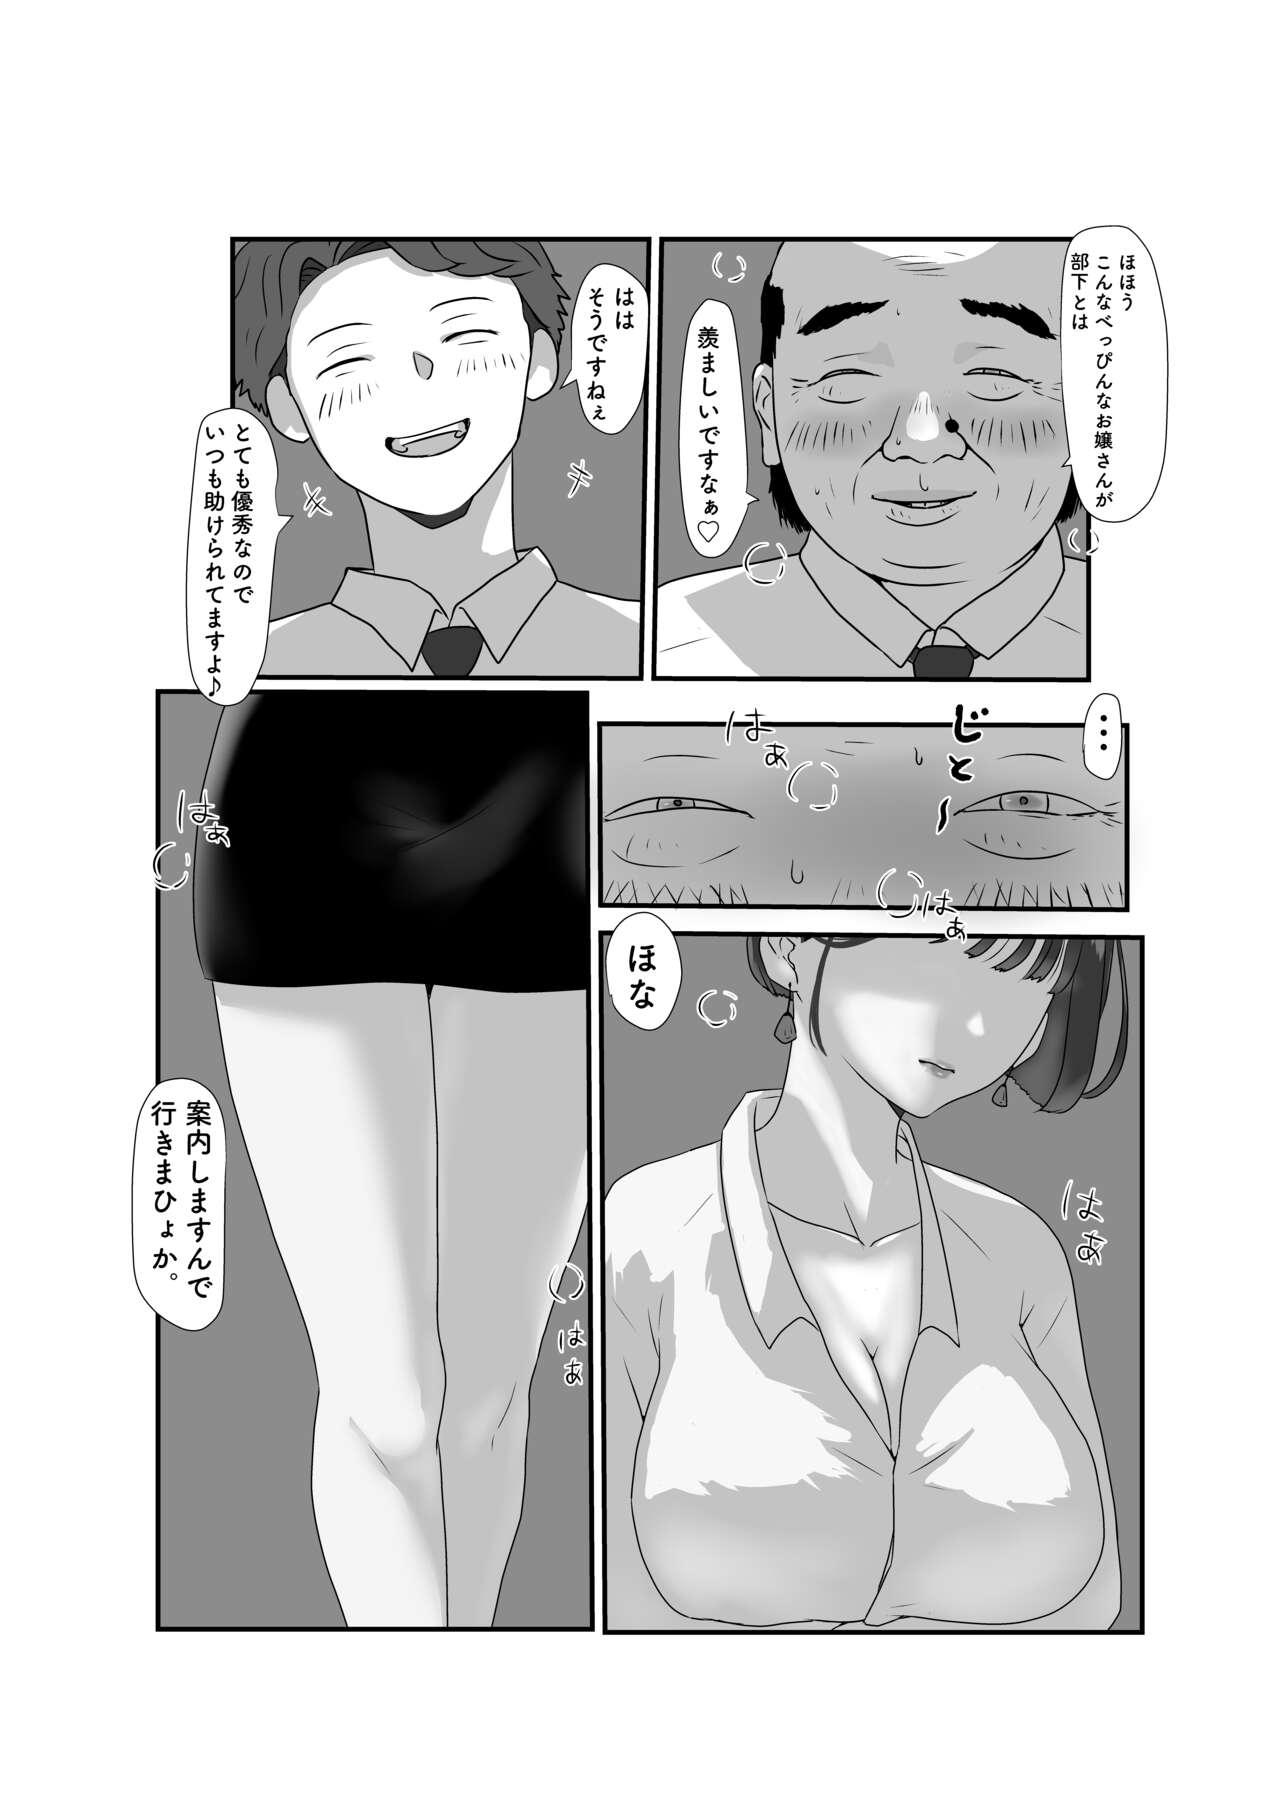 Lick Tsuma wa NTR reta gatte iru. 3 - Original Tongue - Page 9